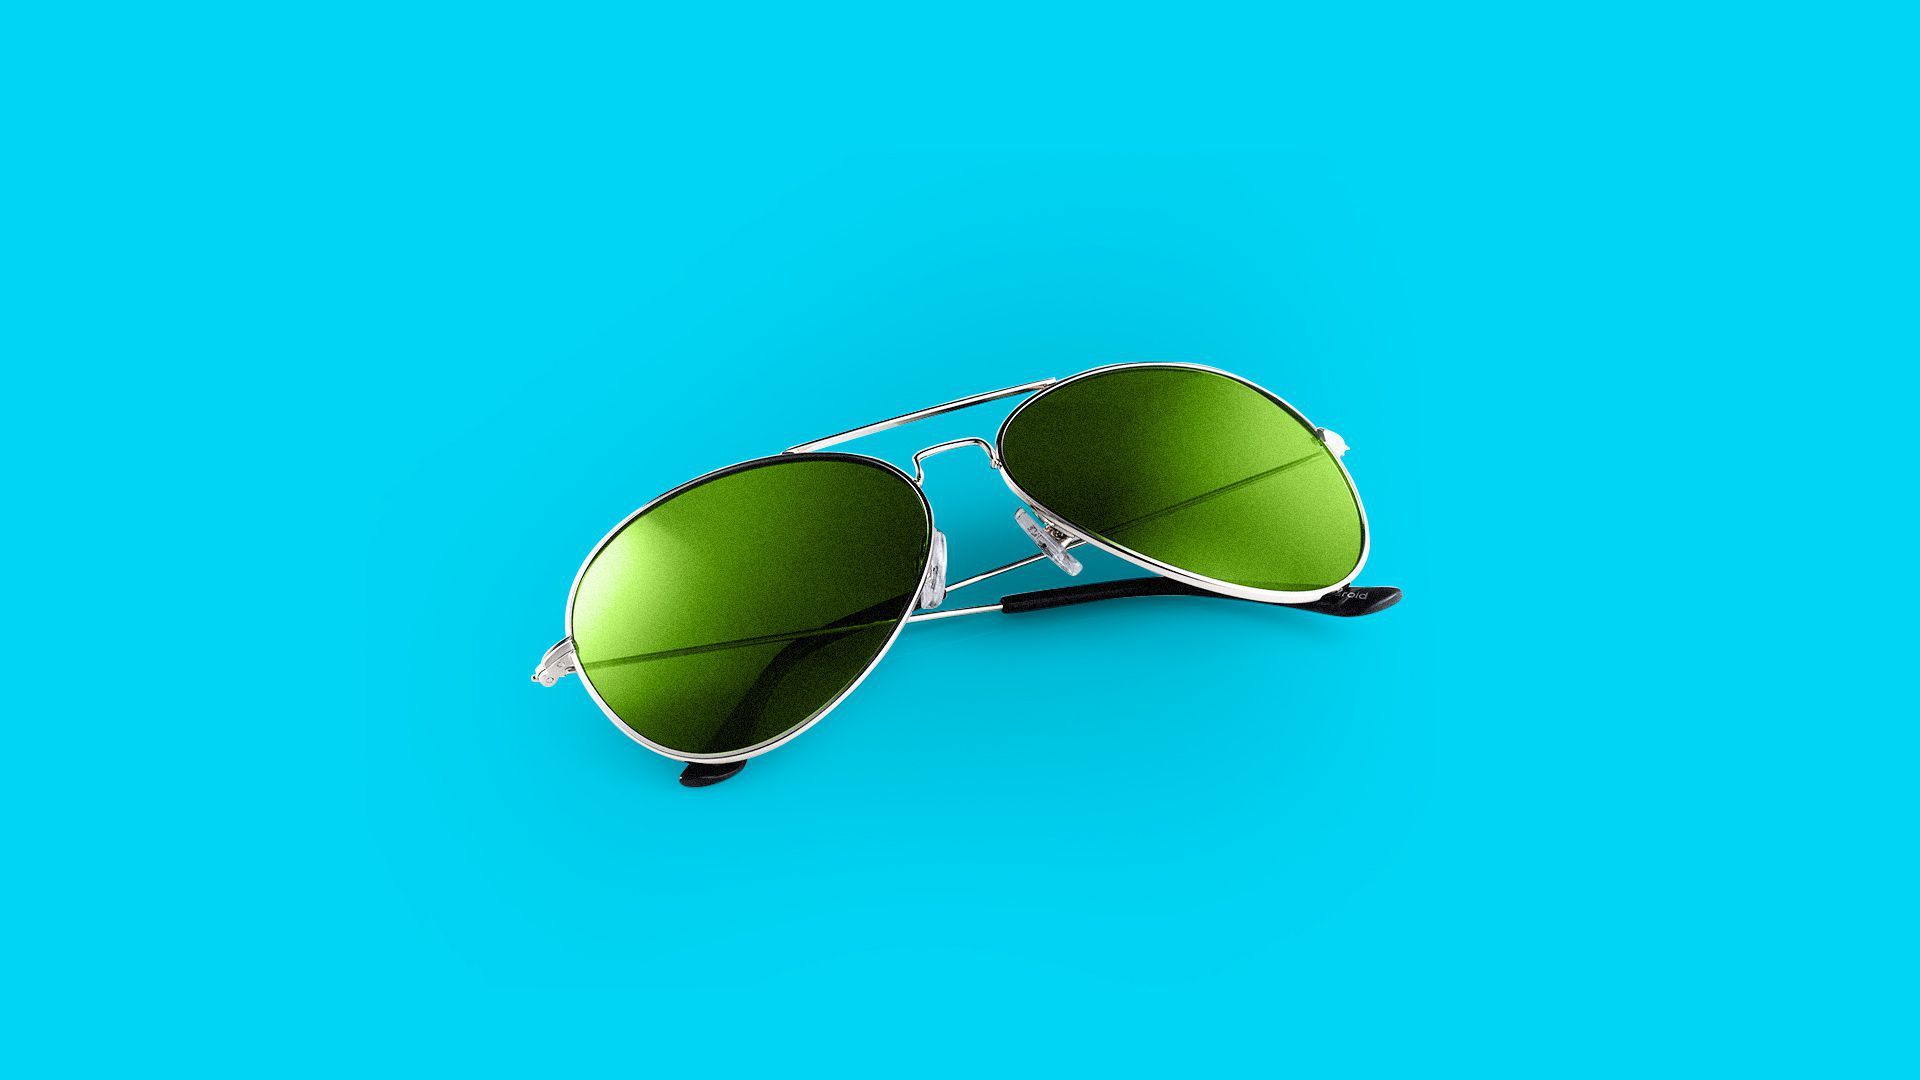 Illustration of aviator glasses with green lenses.